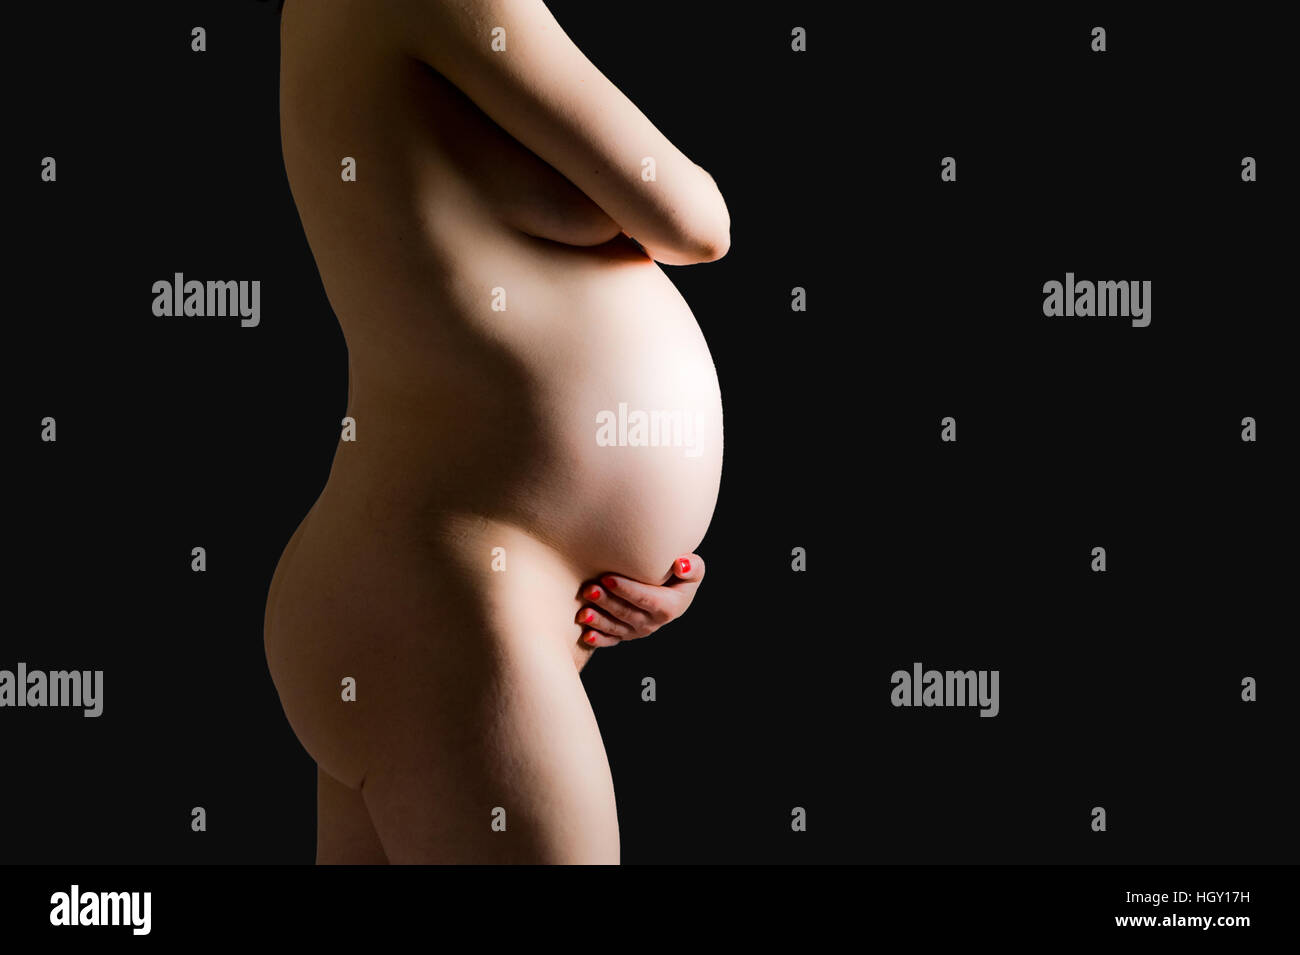 Femme enceinte est holding her belly Banque D'Images